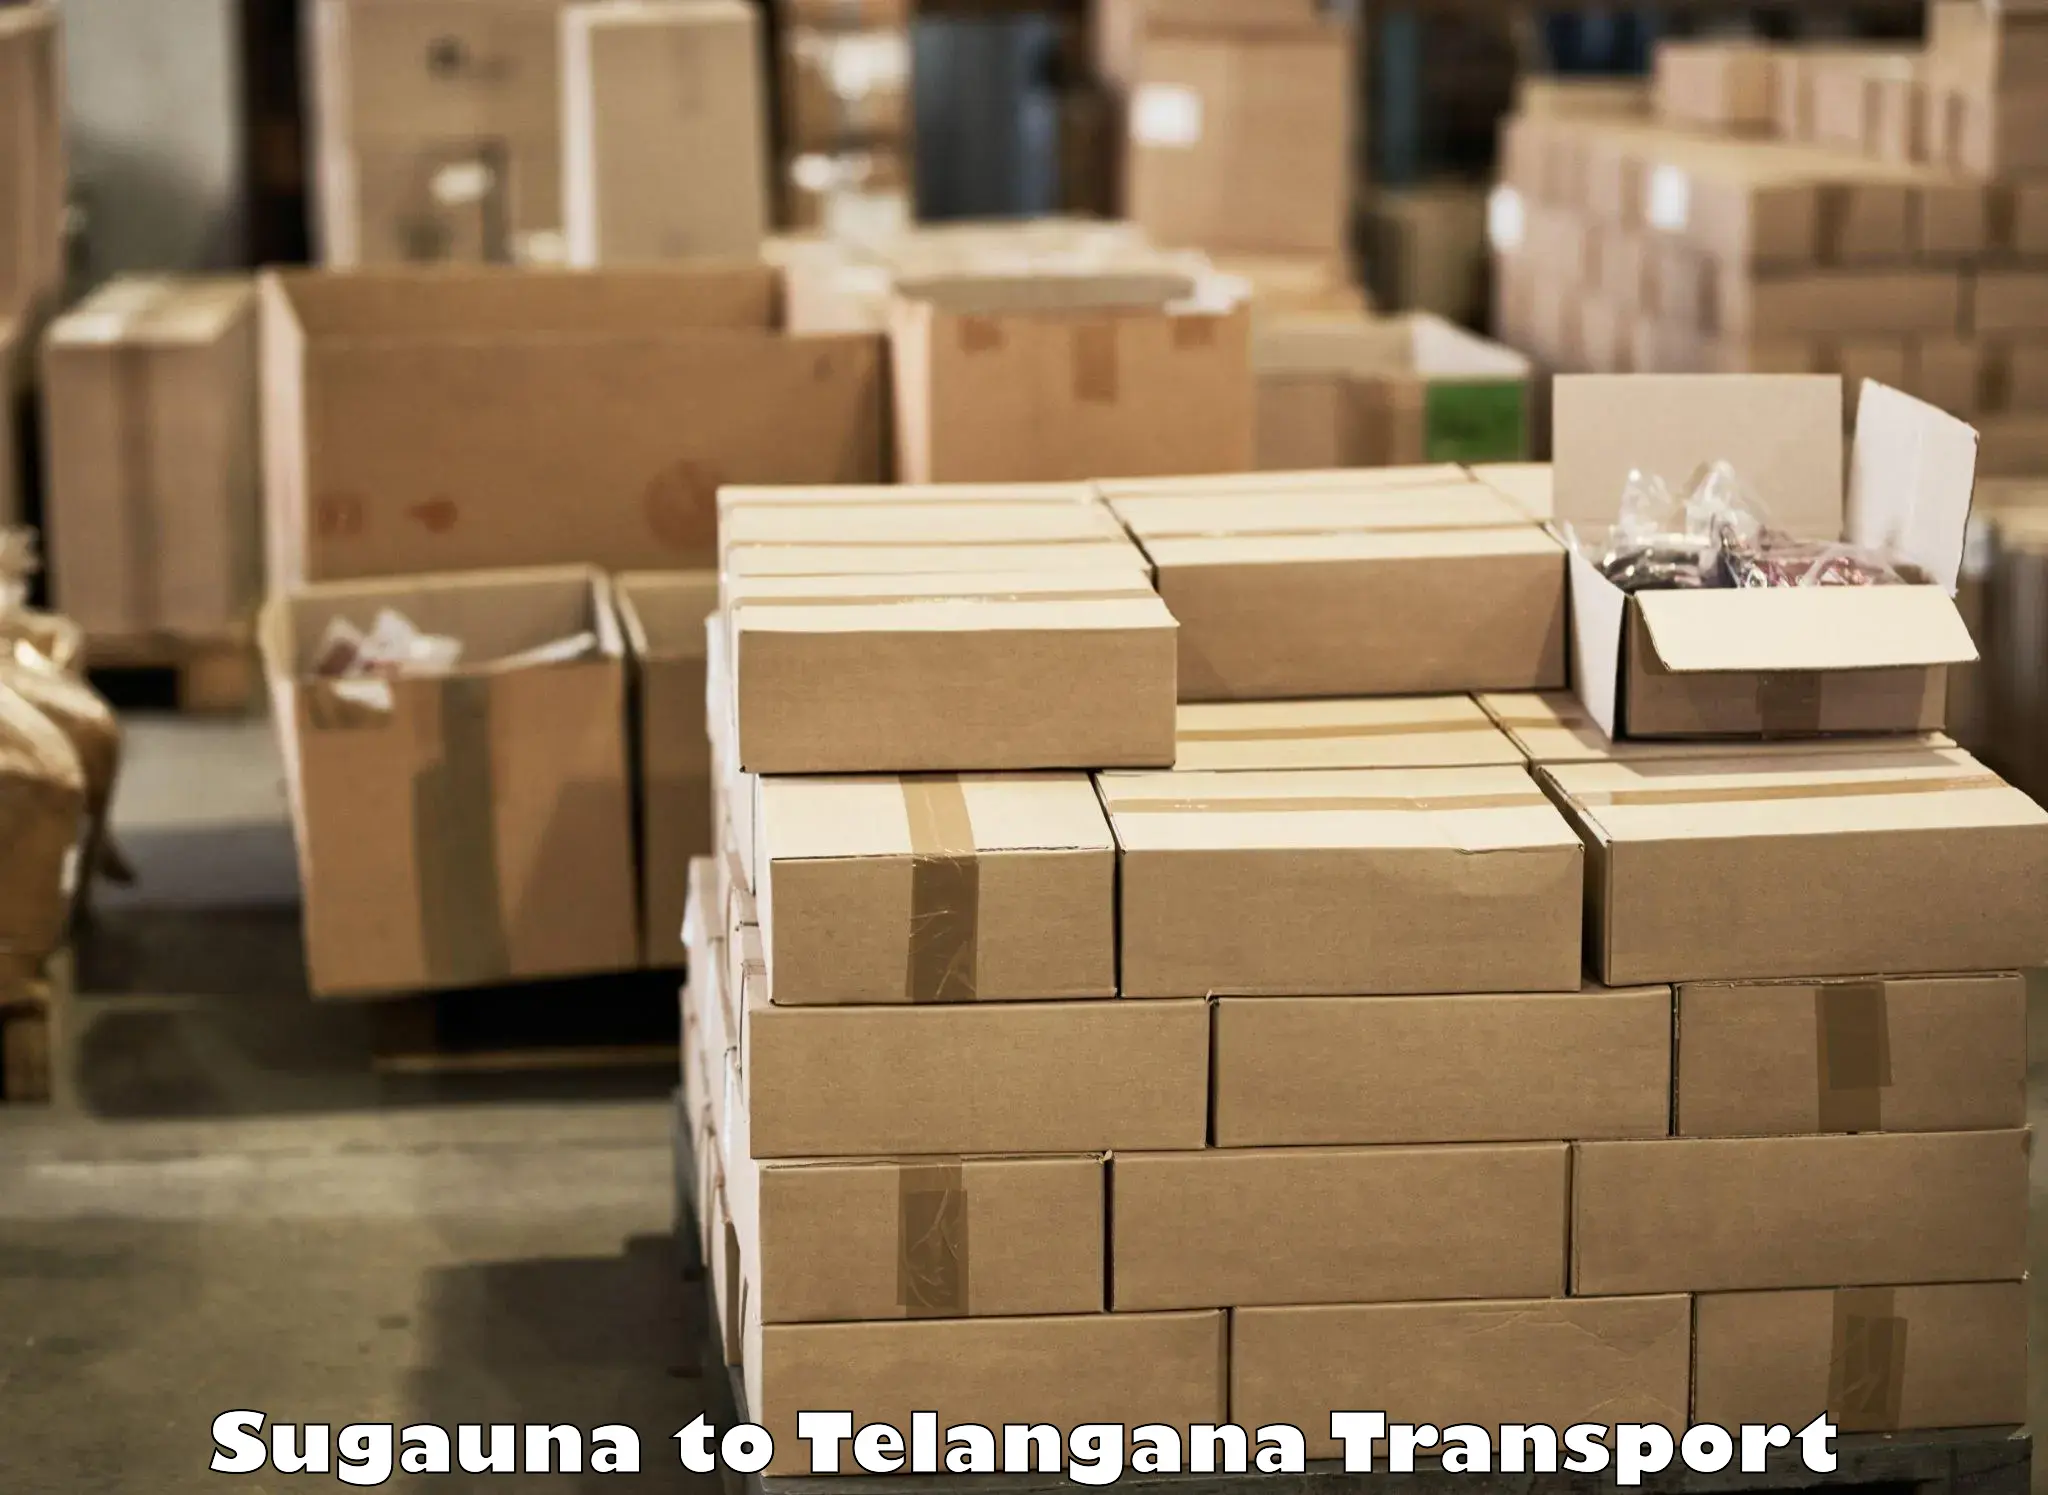 Daily transport service Sugauna to Nellikuduru